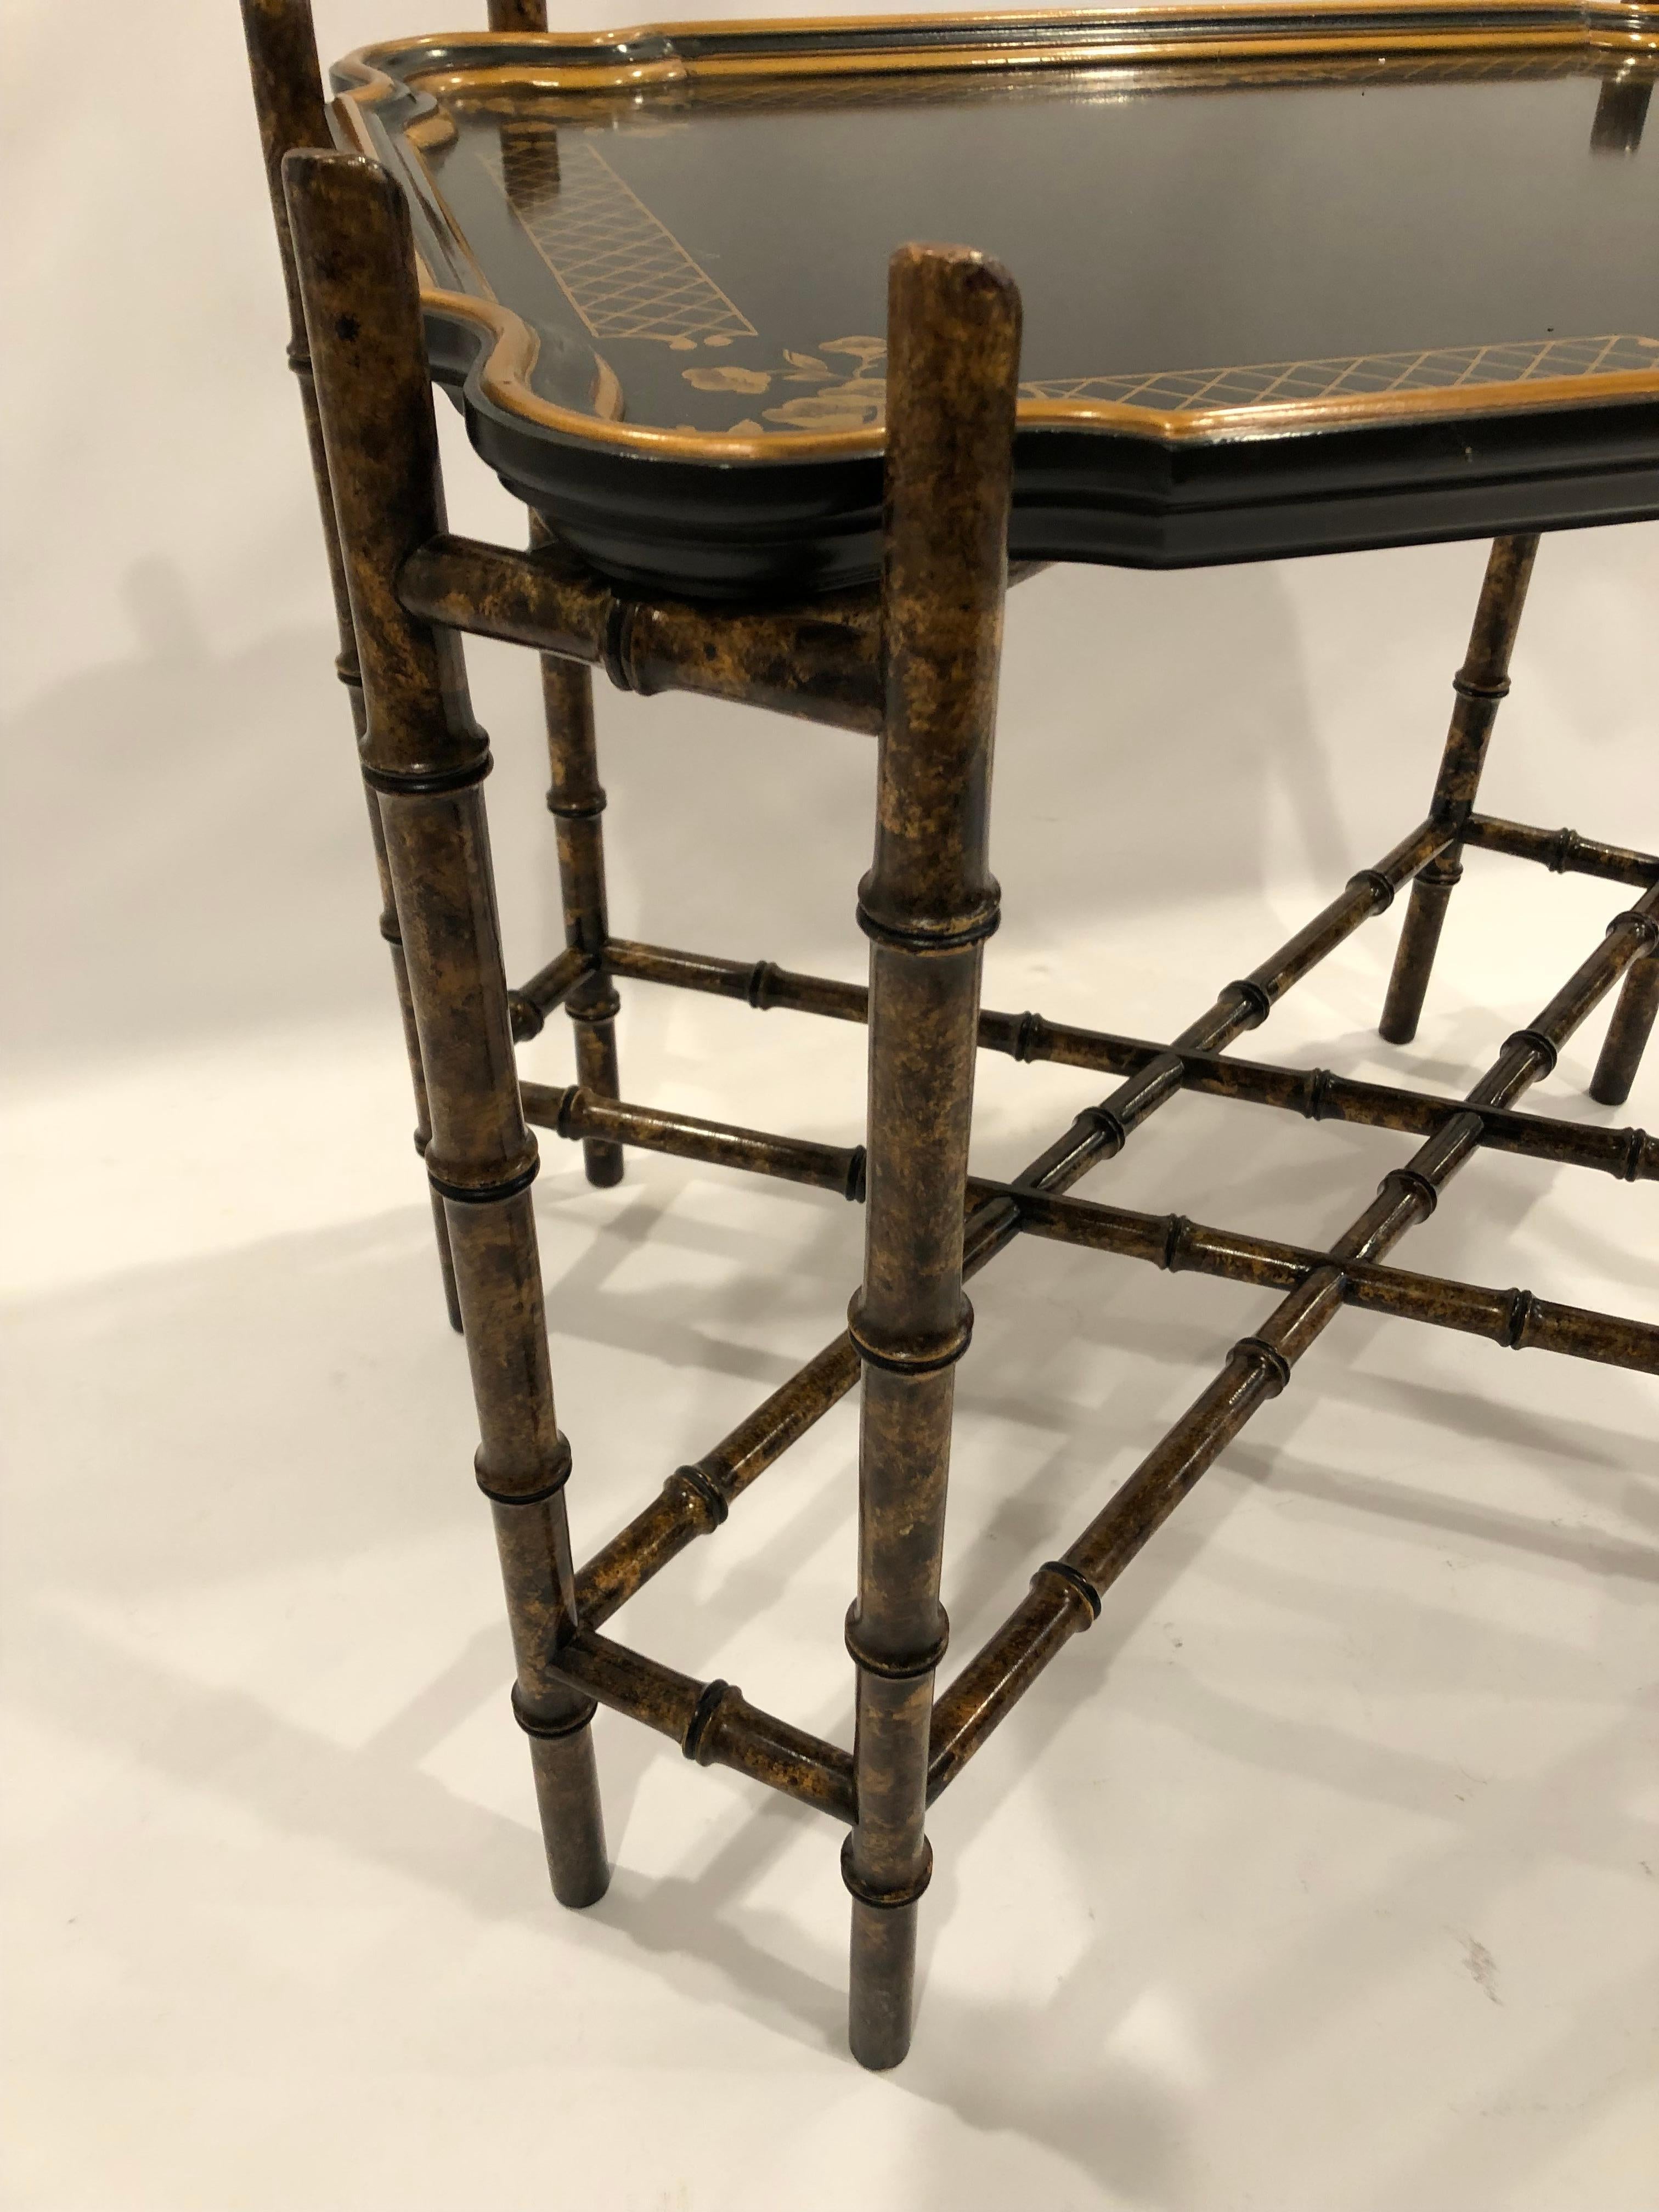 Élégante table basse à plateau d'inspiration Regency, noire et dorée, avec une base en forme de bambou et un plateau amovible festonné et décoré sur le pourtour.